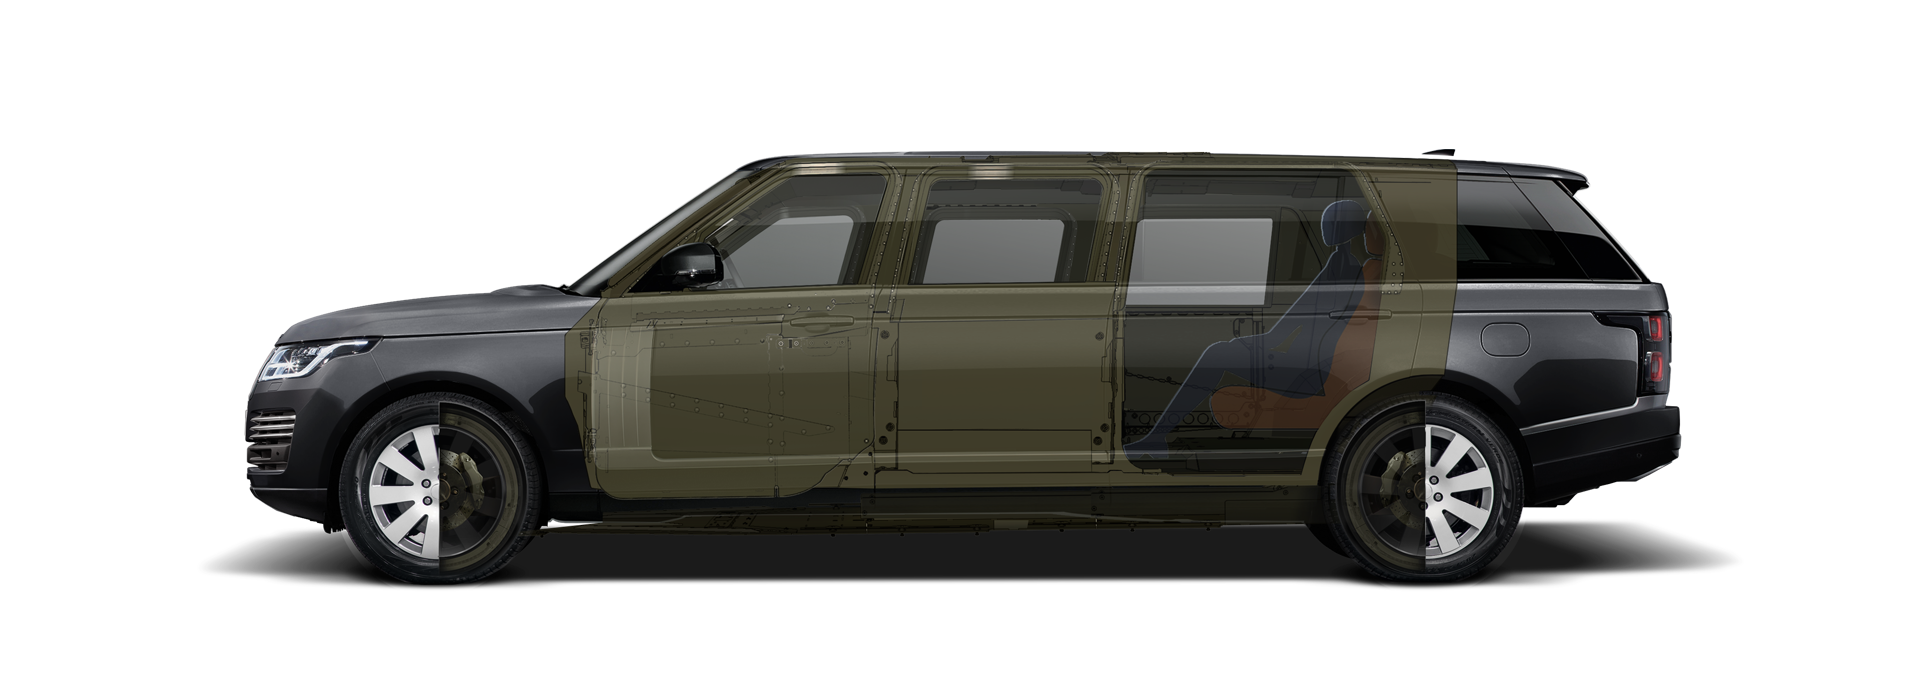 Gestreckt und gepanzert Range Rover +1000mm - KLASSEN